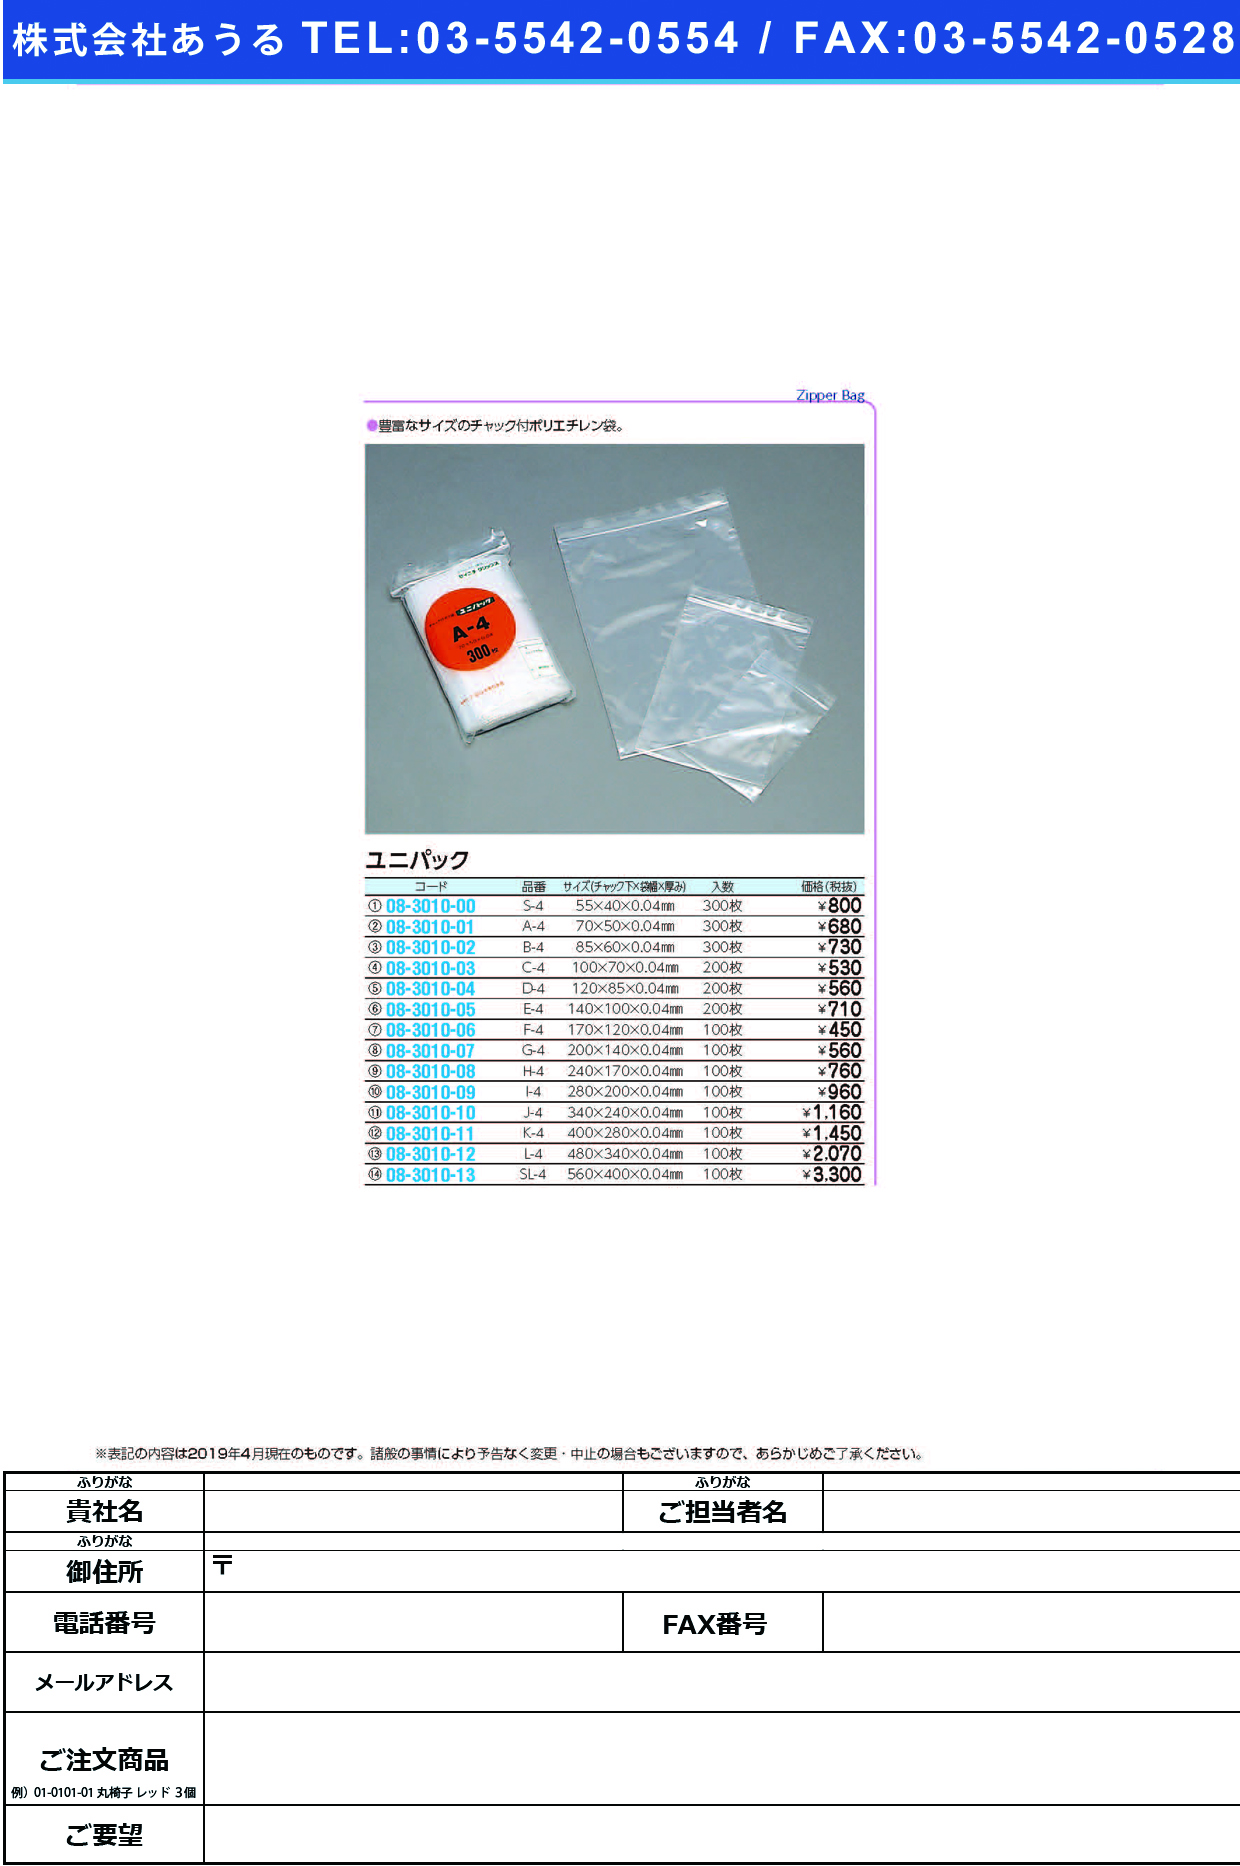 (08-3010-03)ユニパック C-4(100X70MM)200ﾏｲ ﾕﾆﾊﾟｯｸ【1袋単位】【2019年カタログ商品】